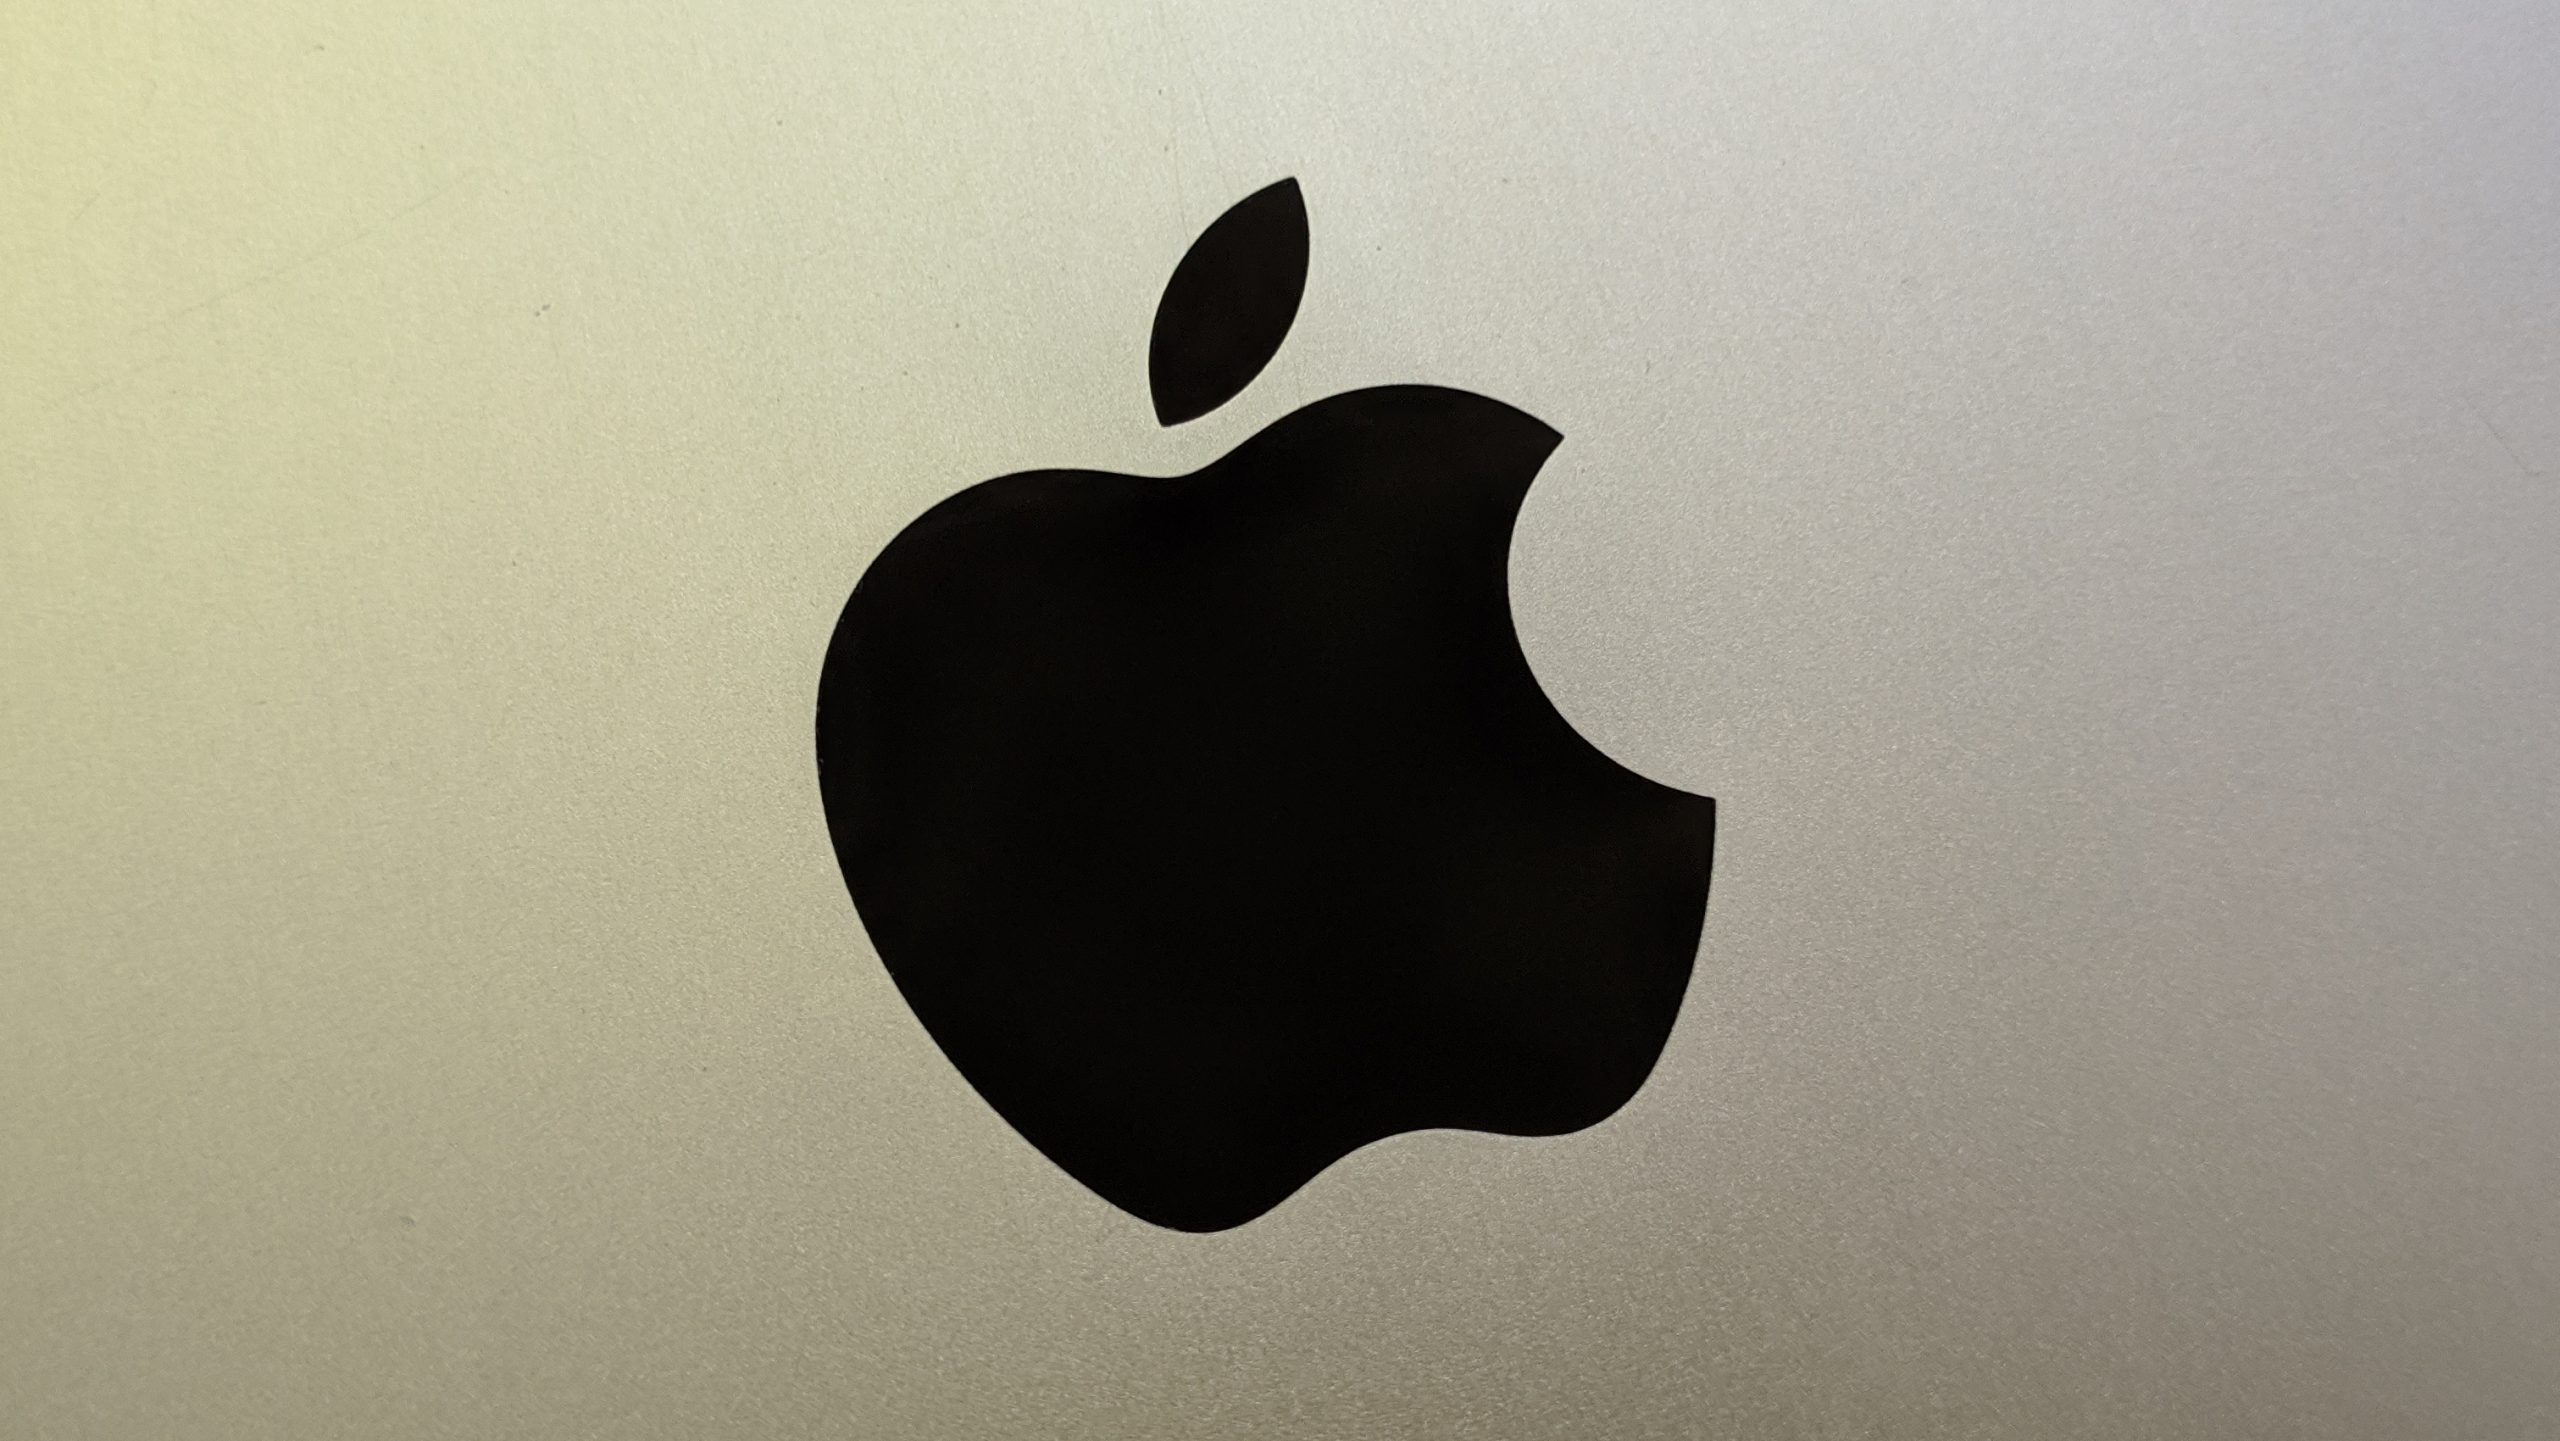 Apple cho biết việc bán iPhone mới không kèm củ sạc giúp tiết kiệm 861,000 tấn kim loại